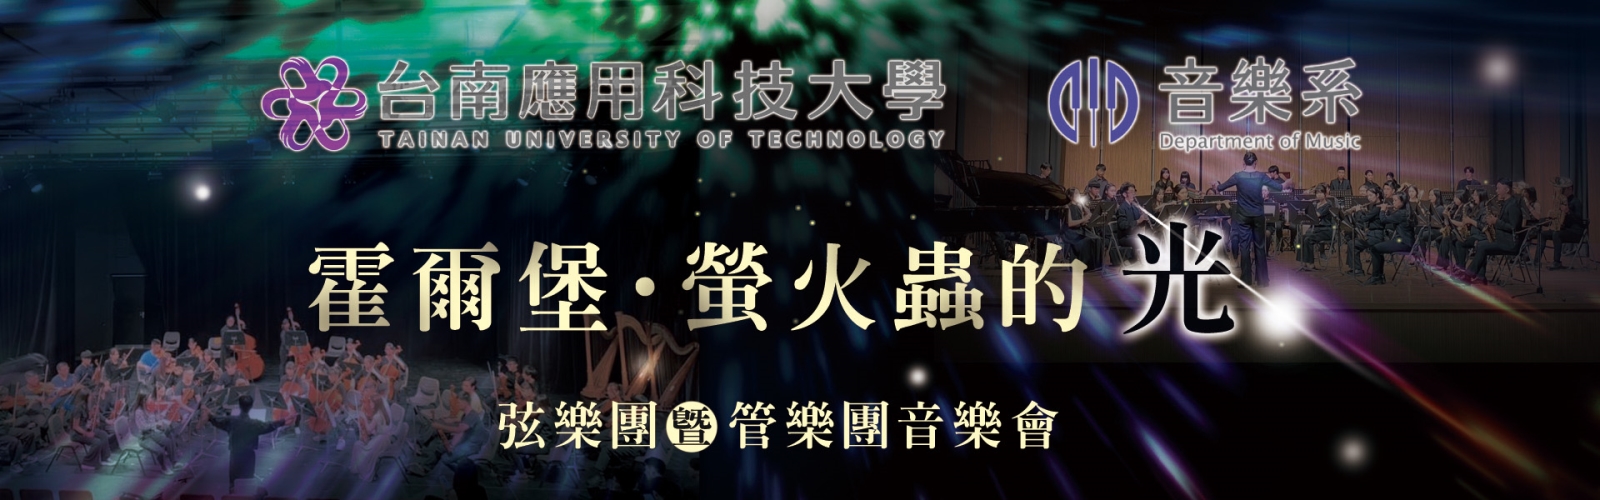 《霍爾堡．螢火蟲的光》台南應用科技大學音樂系弦樂團暨管樂團聯合音樂會